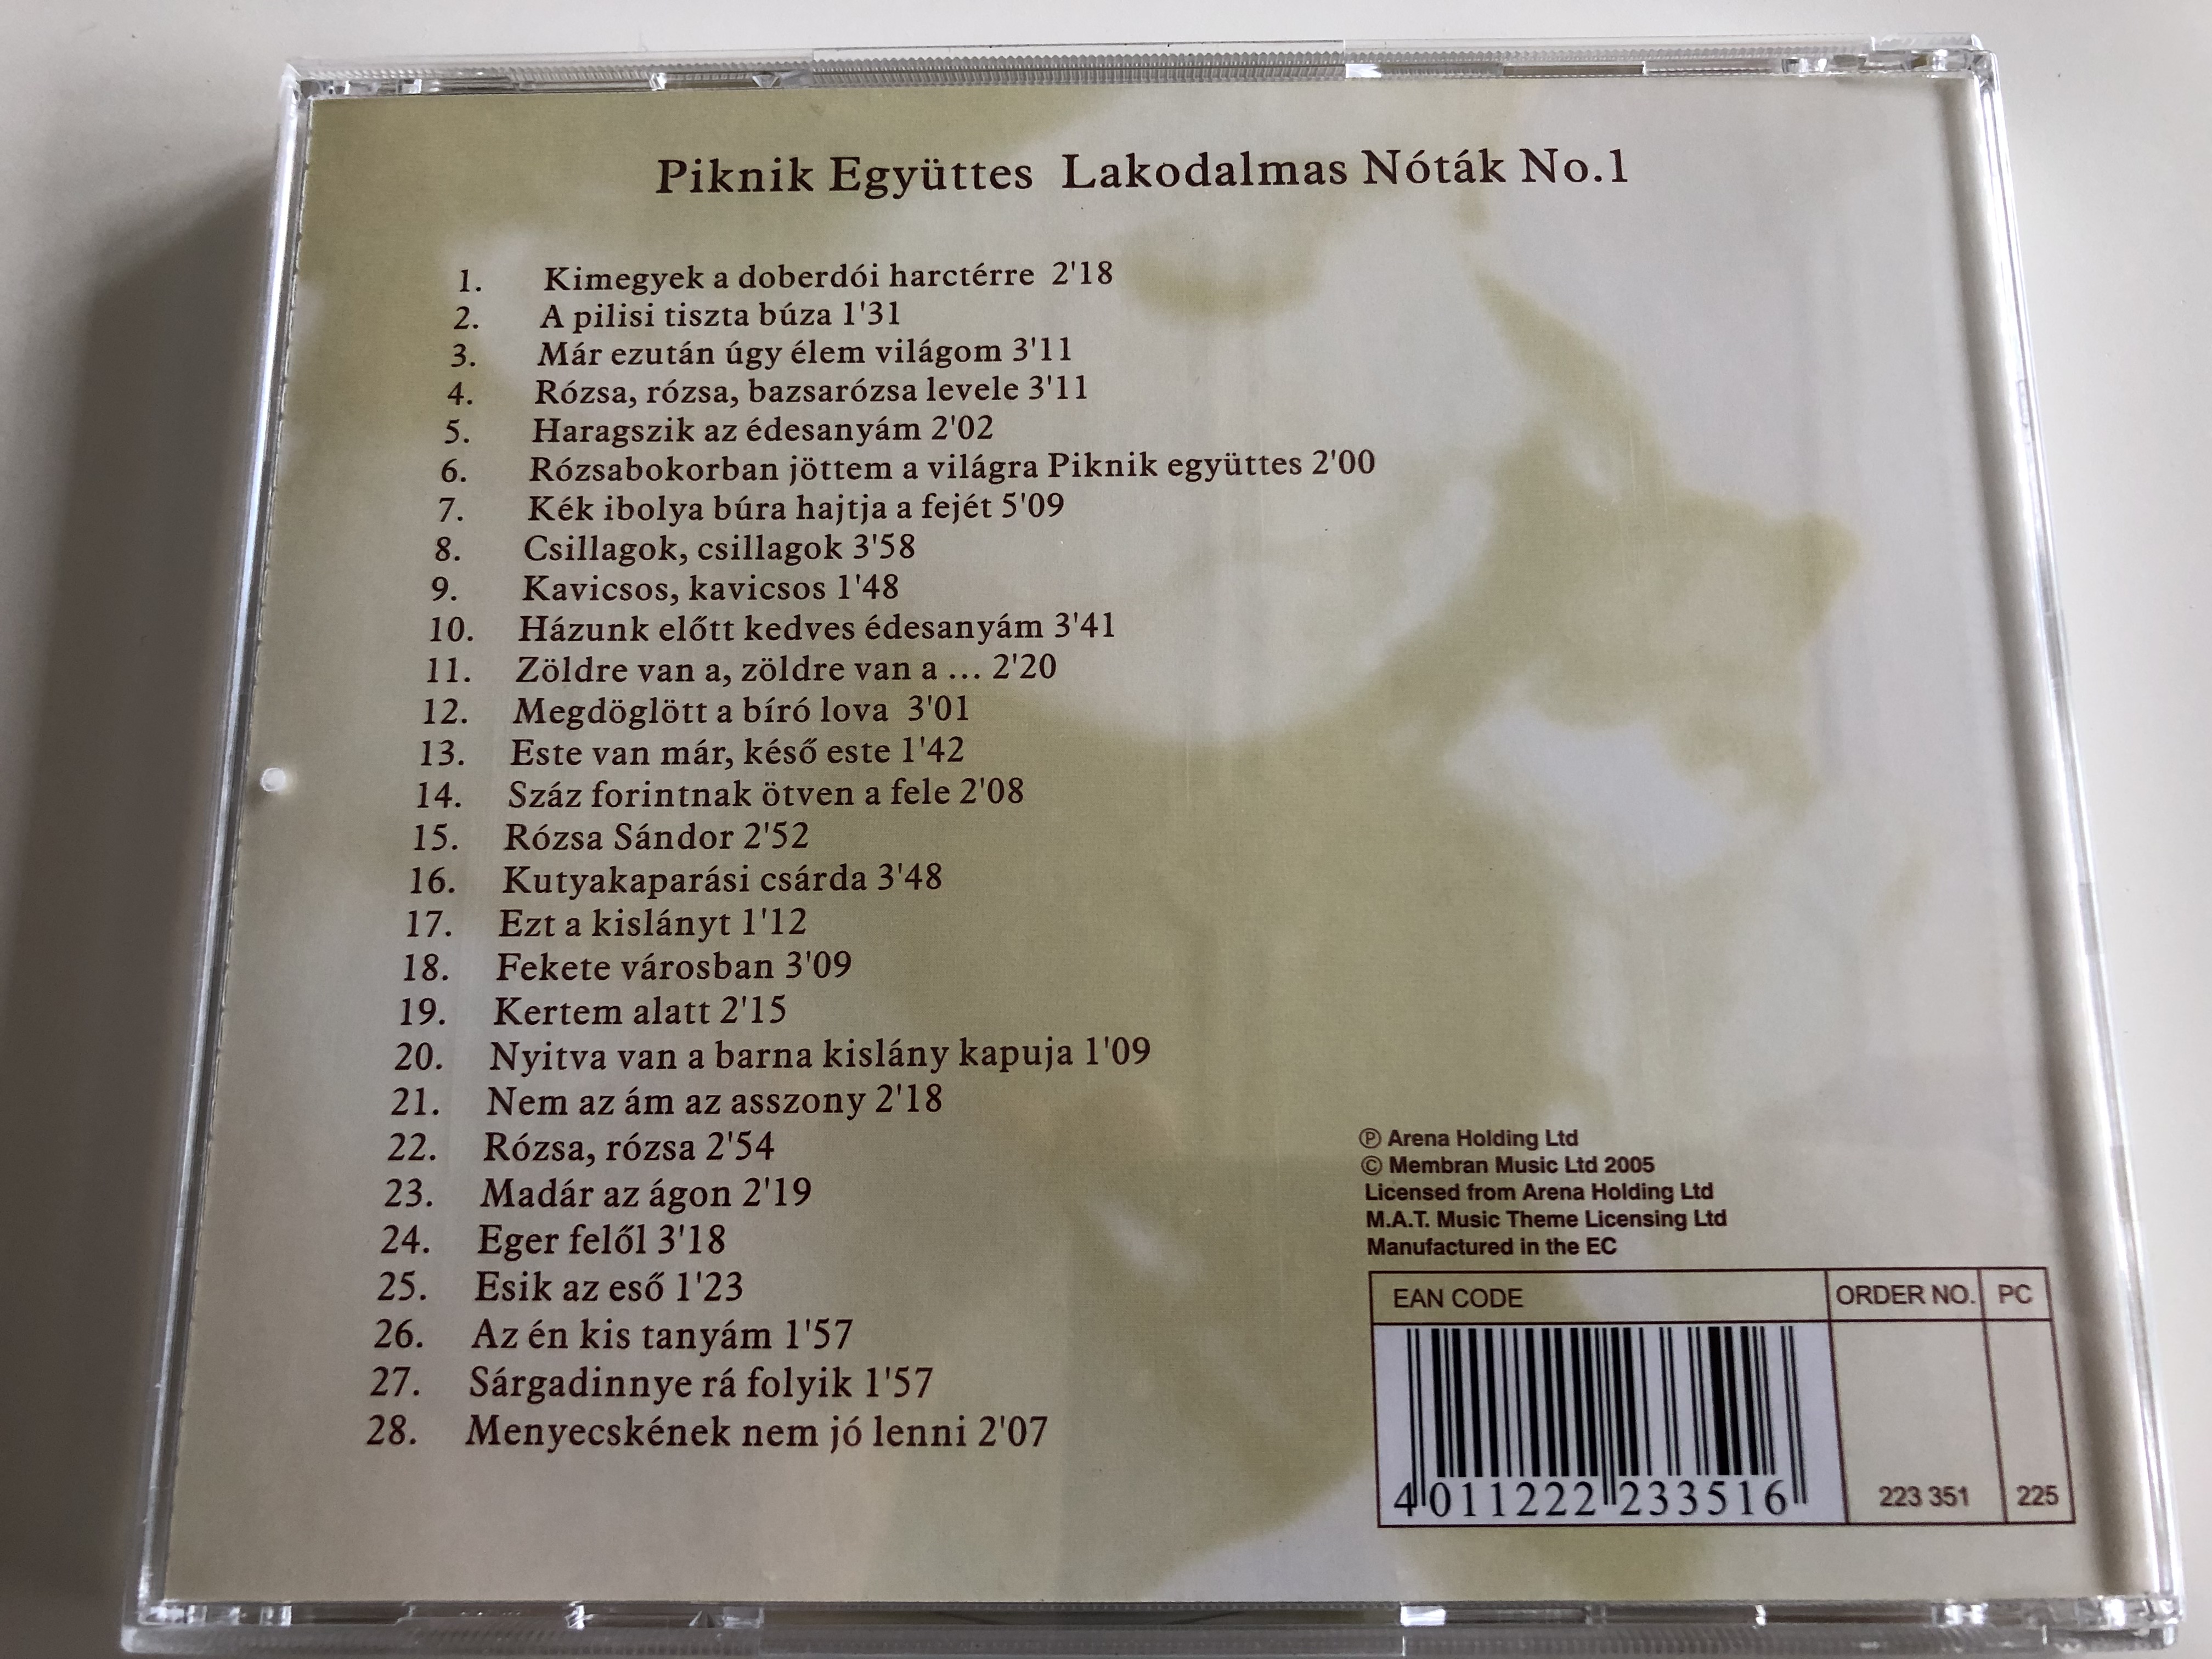 lakodalmas-notak-no.-1-piknik-egyuttes-membran-music-audio-cd-2005-223-351-4-.jpg